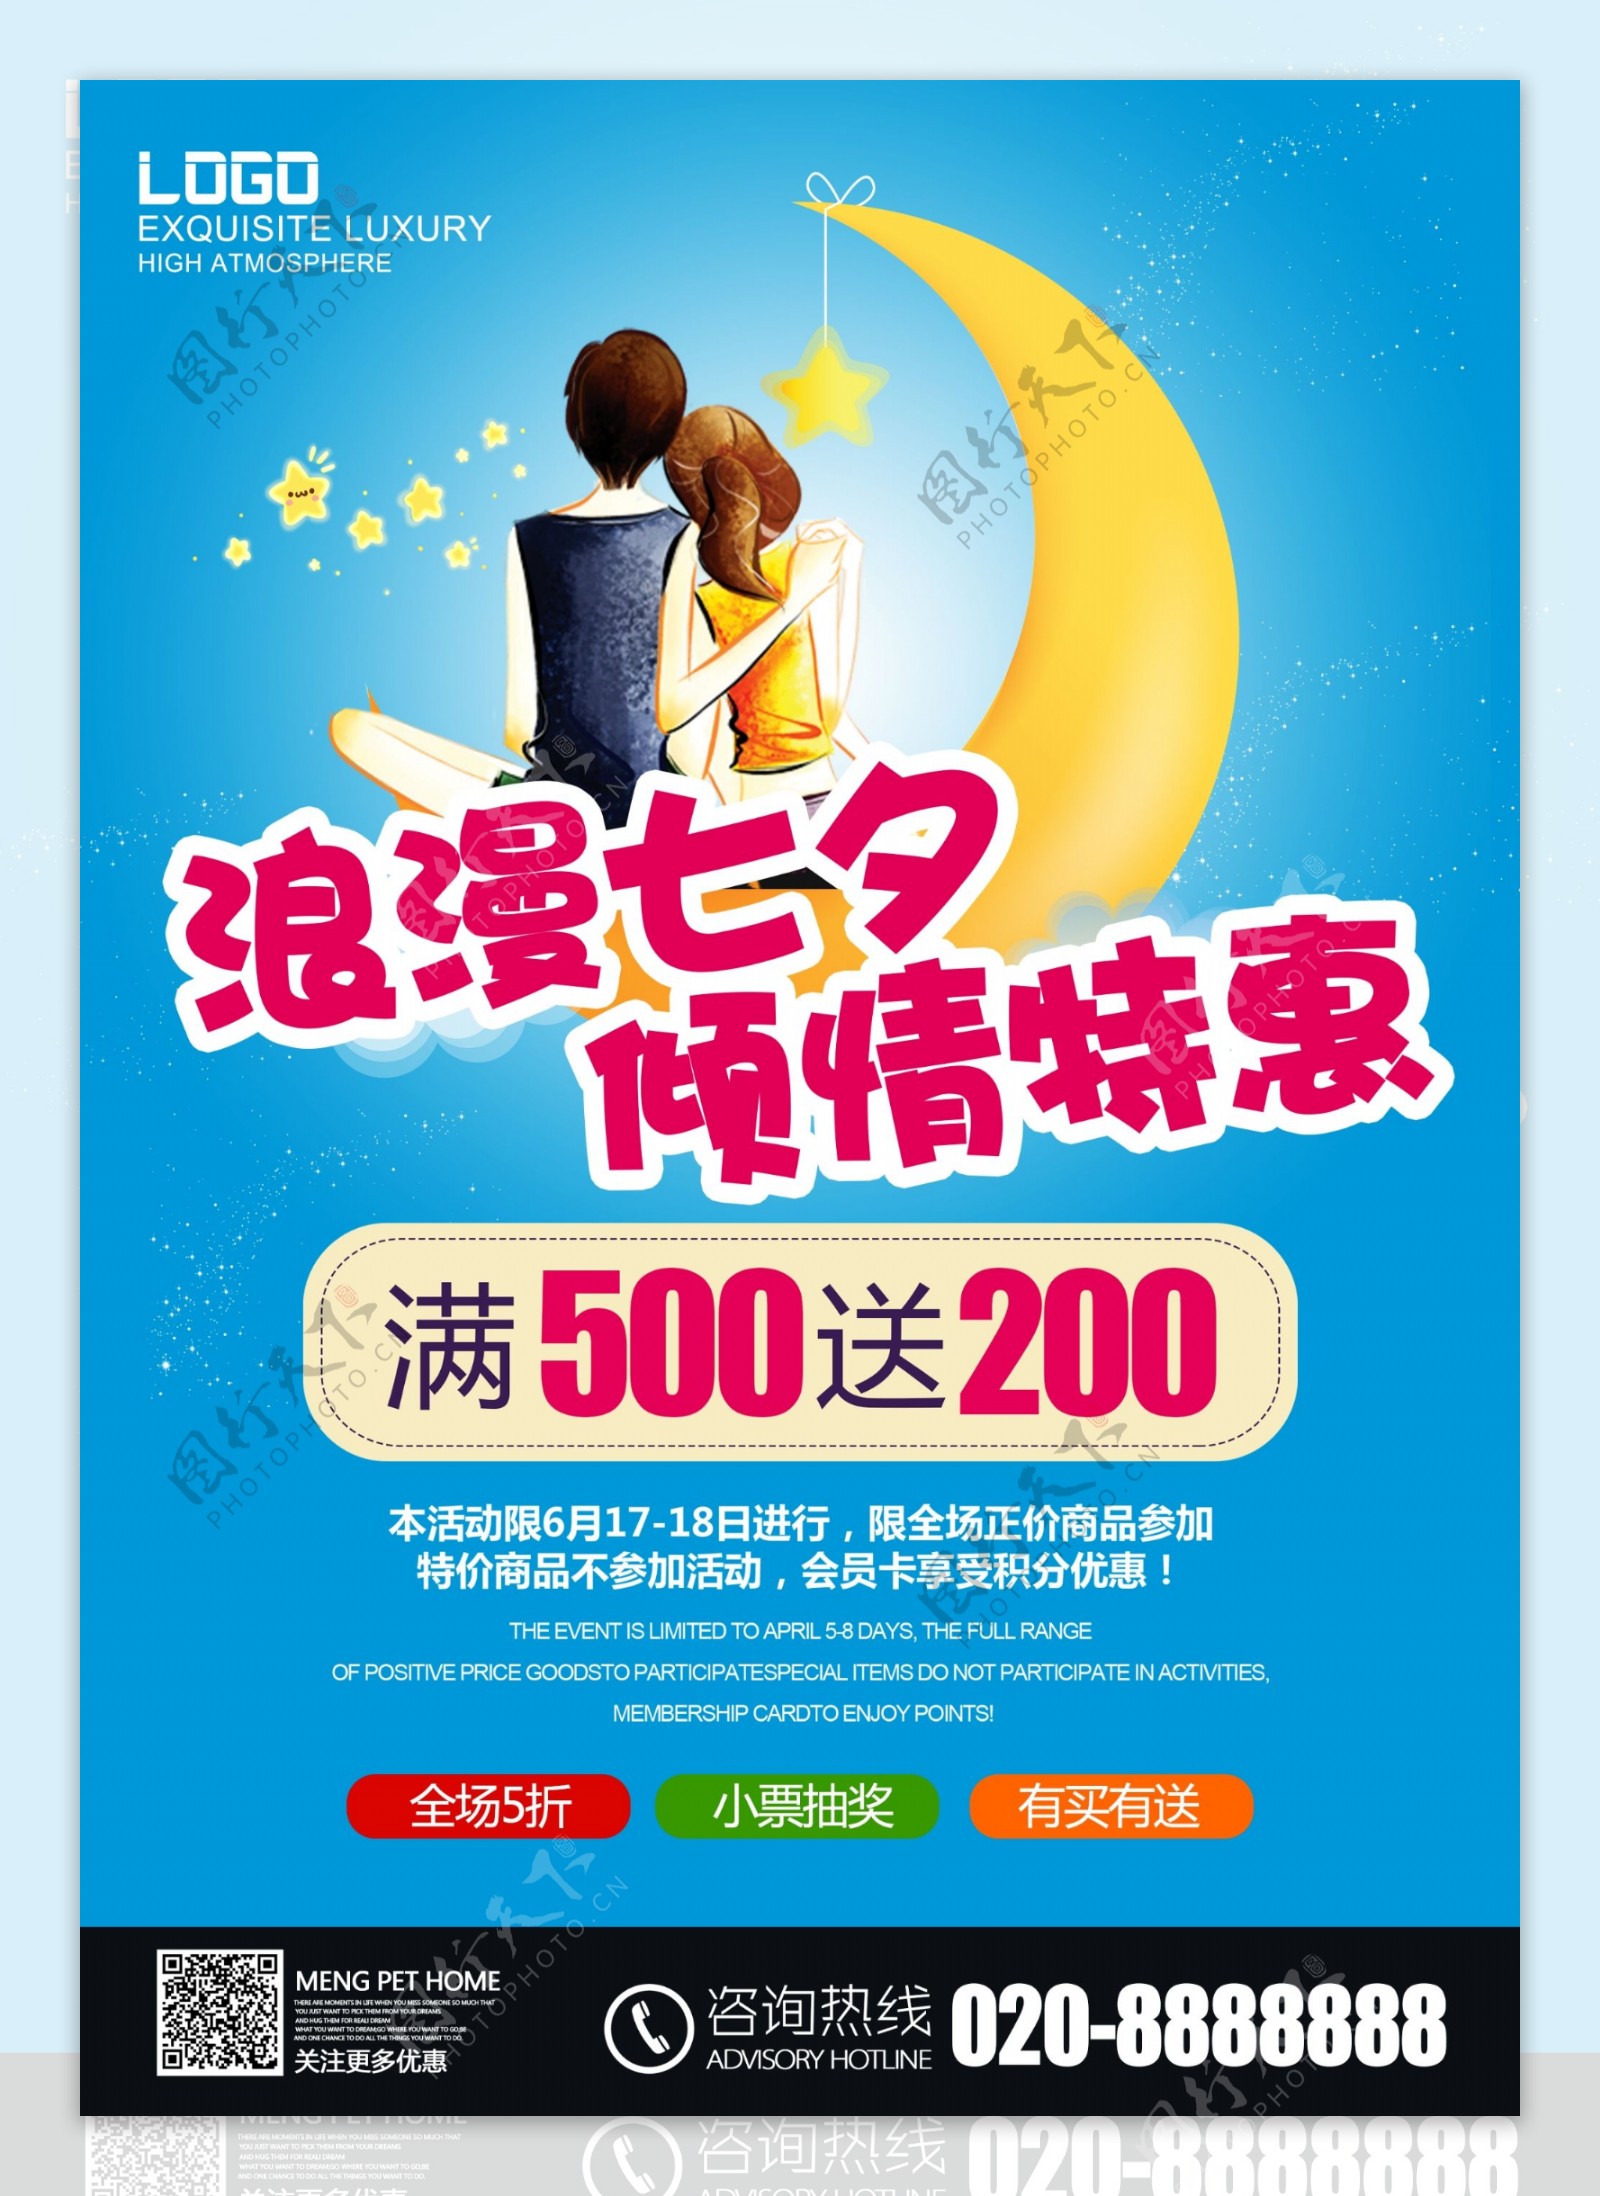 七夕节商场促销海报